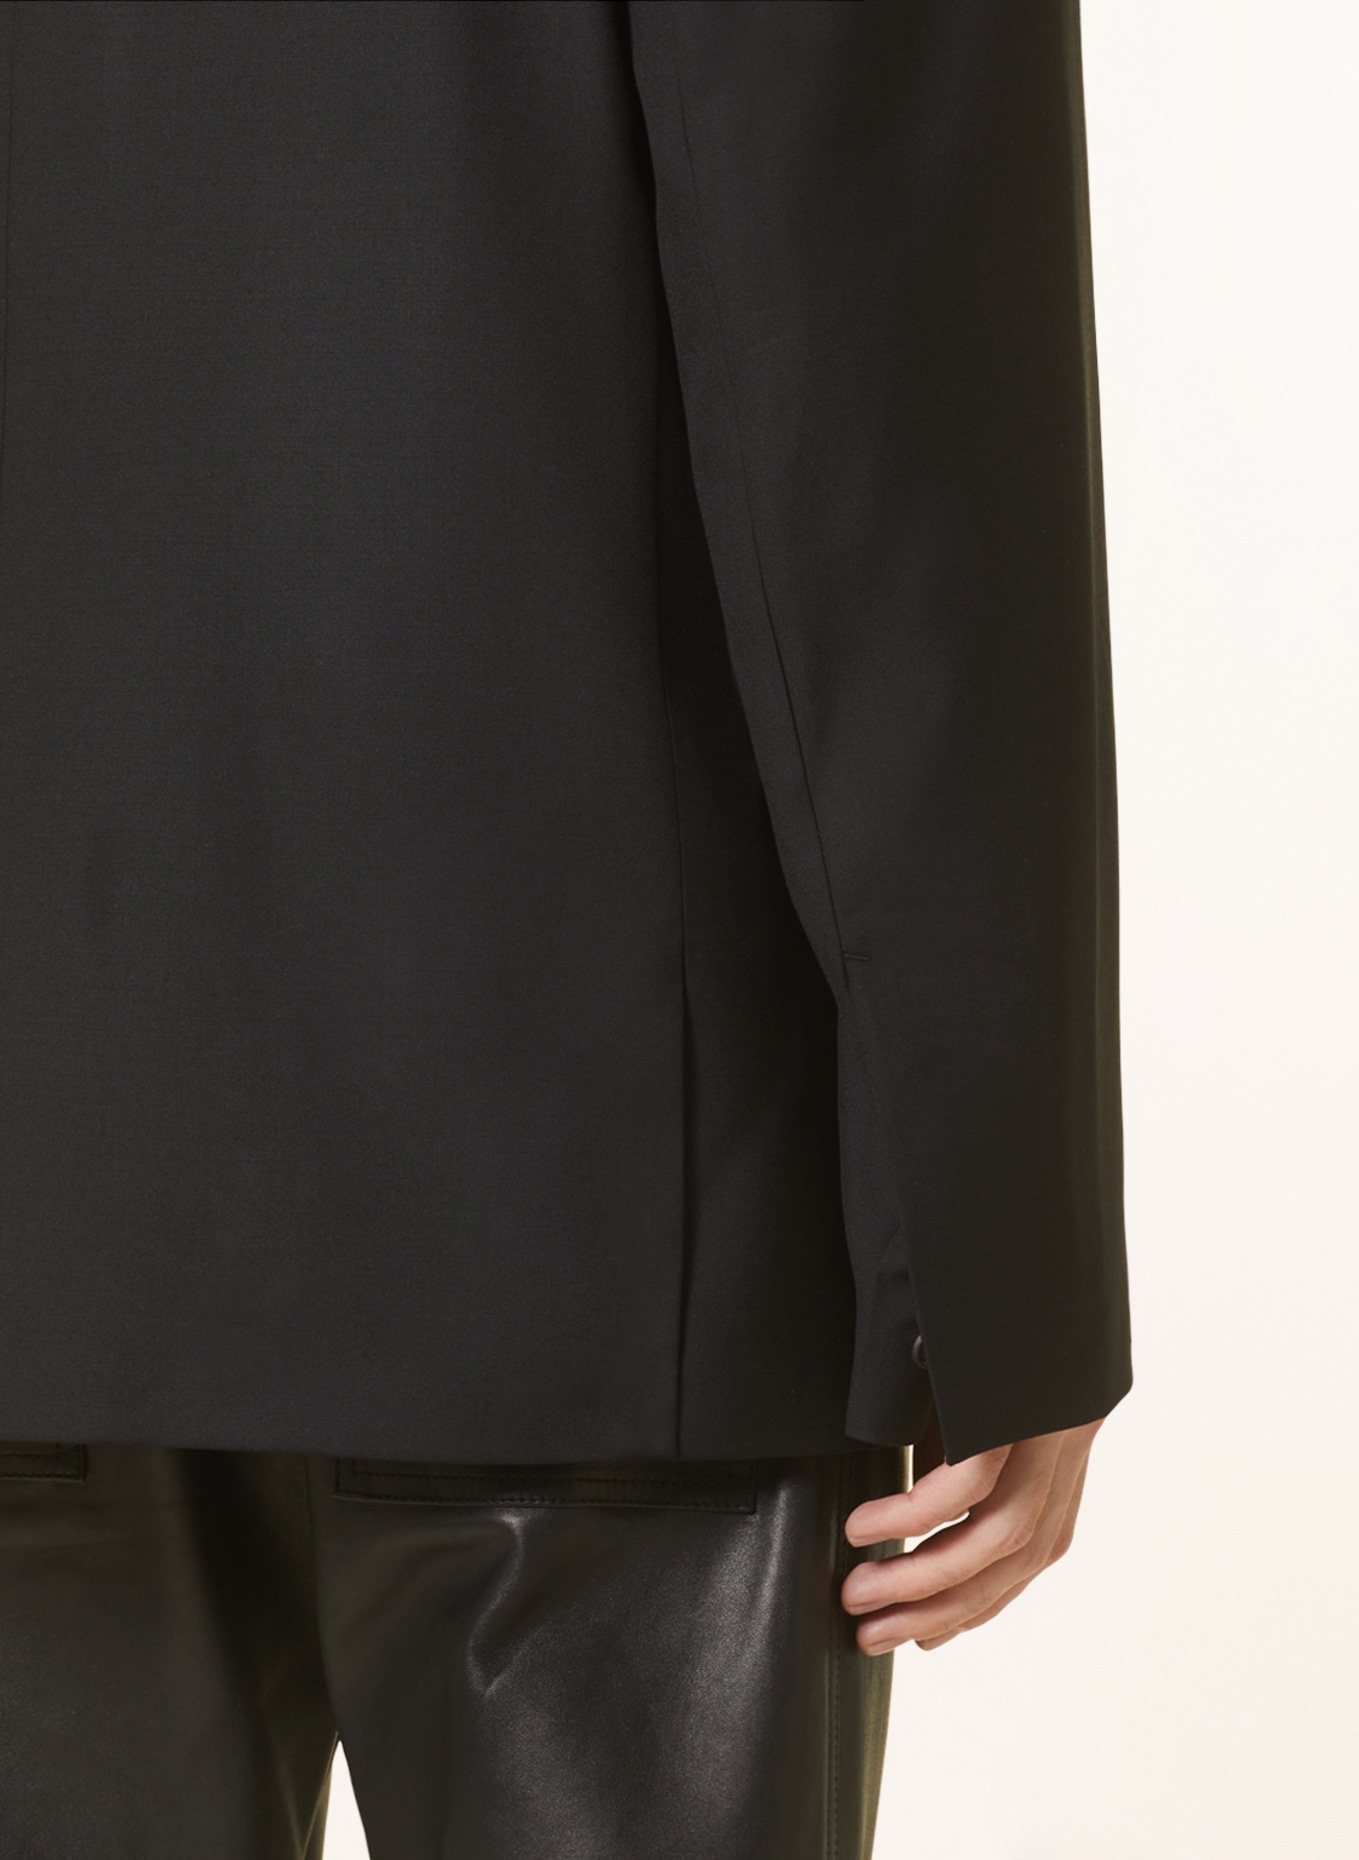 032c Tailored jacket ORION regular fit, Color: BLACK (Image 6)